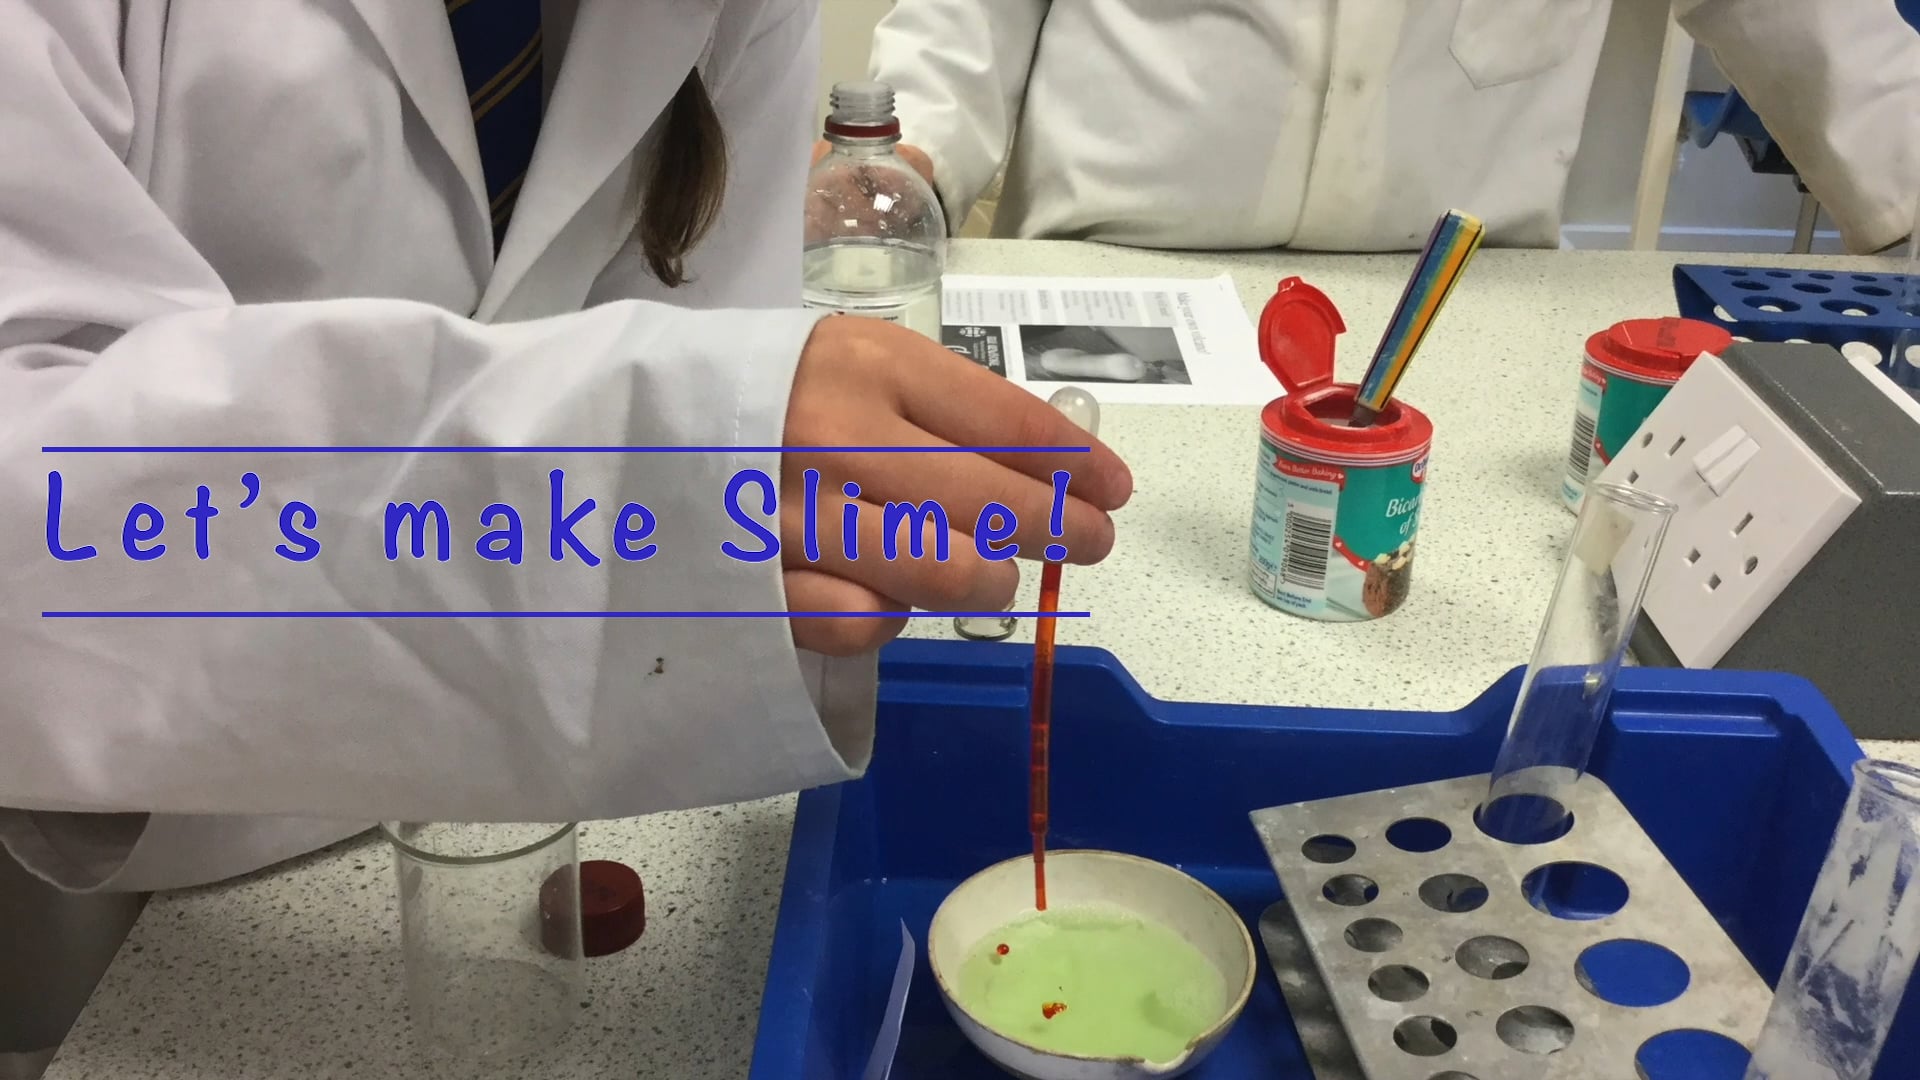 Let's make Slime!